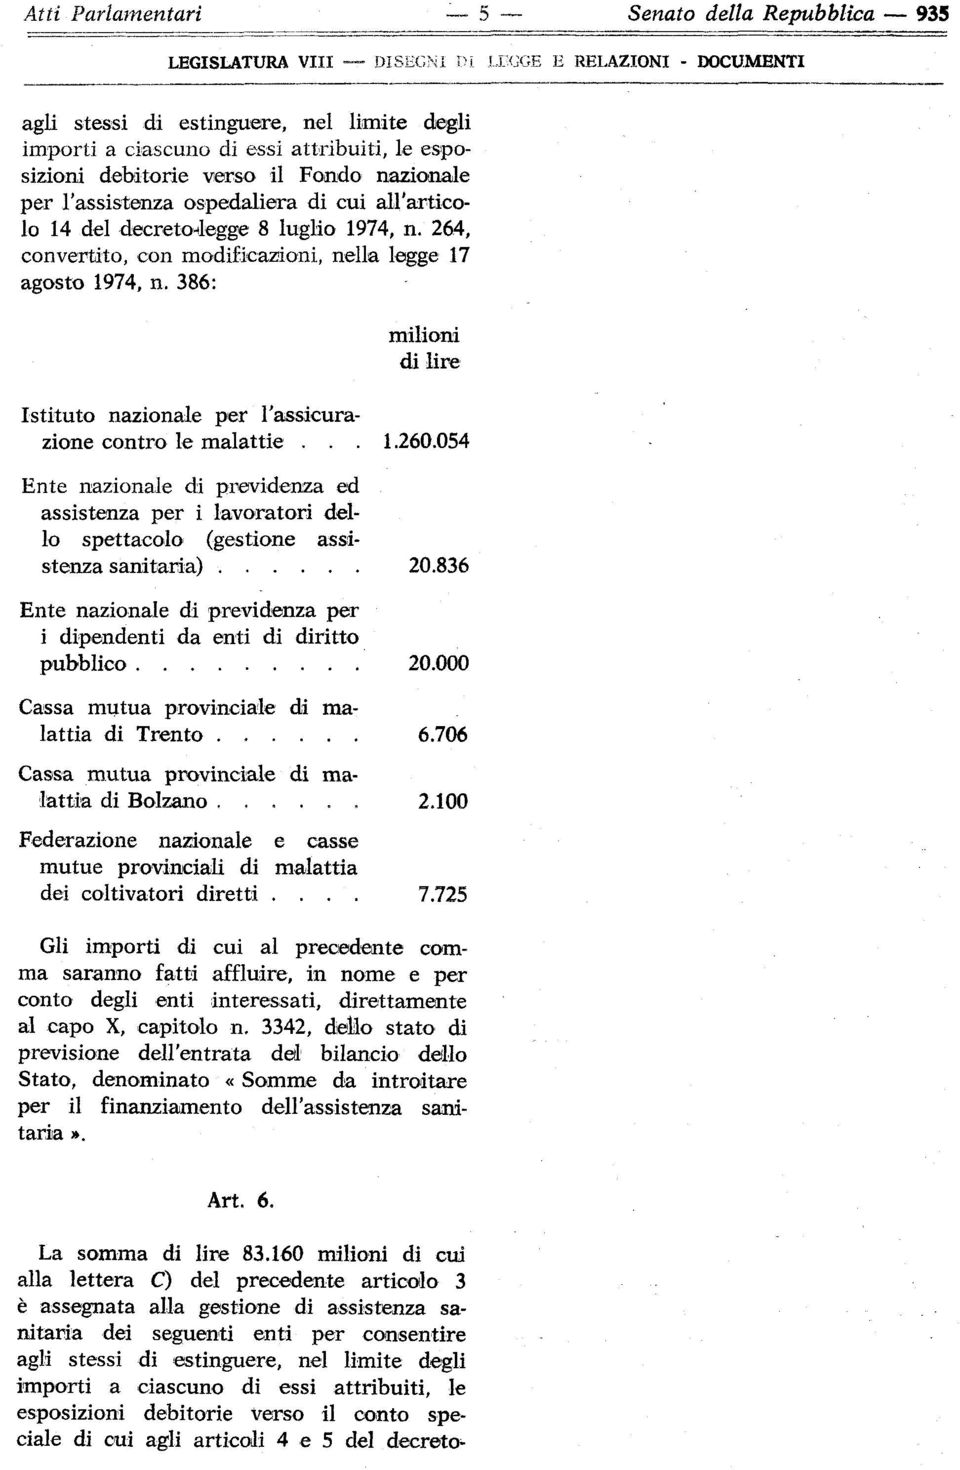 264, convertito, con modificazioni, nella legge 17 agosto 1974, n. 386: Istituto nazionale per l'assicurazione contro le malattie... 1.260.054 sanitaria) 20.